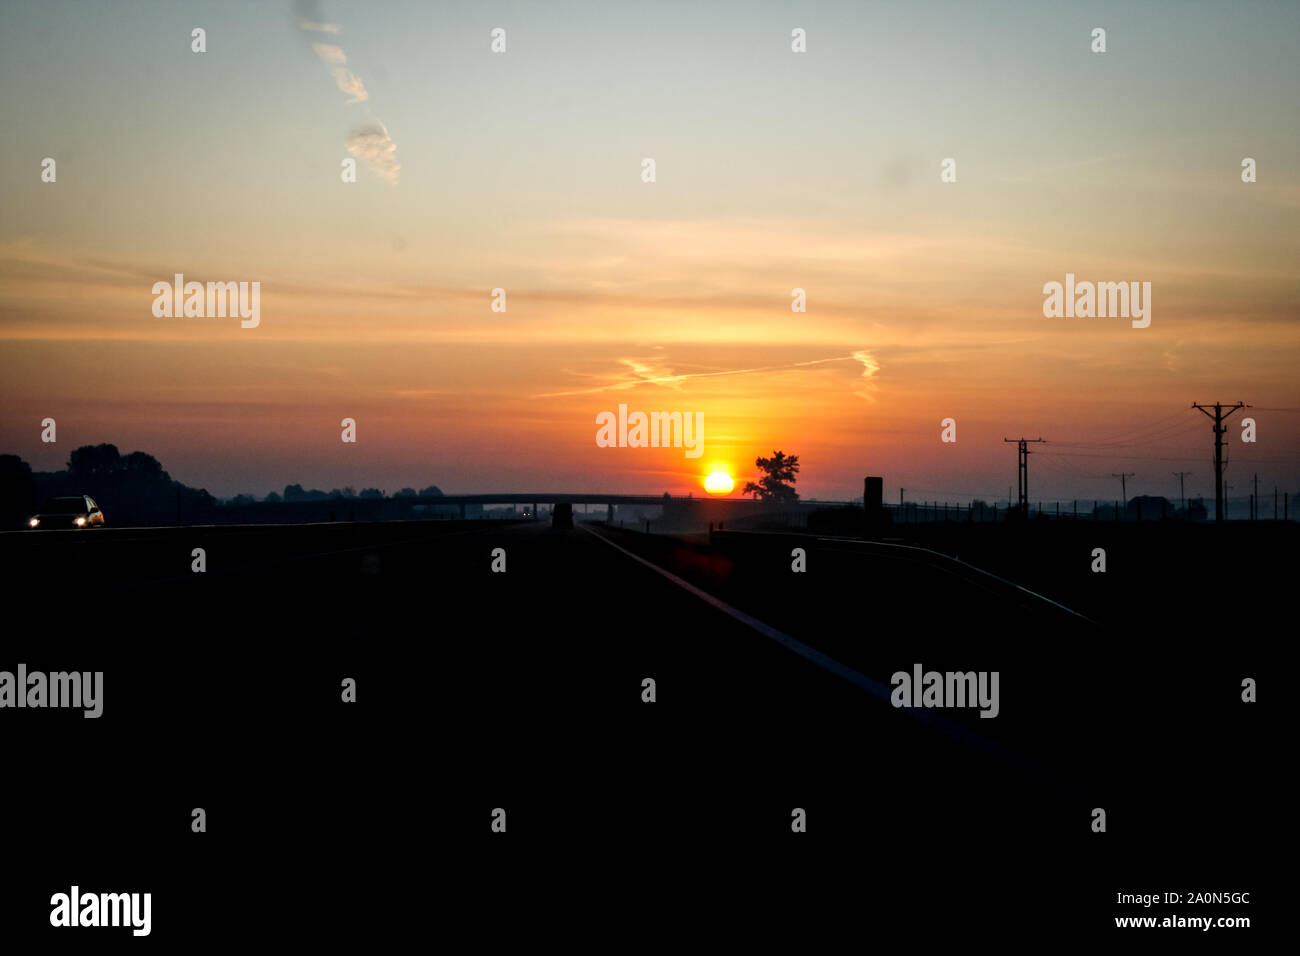 Sunrise on the highway, Poland Stock Photo